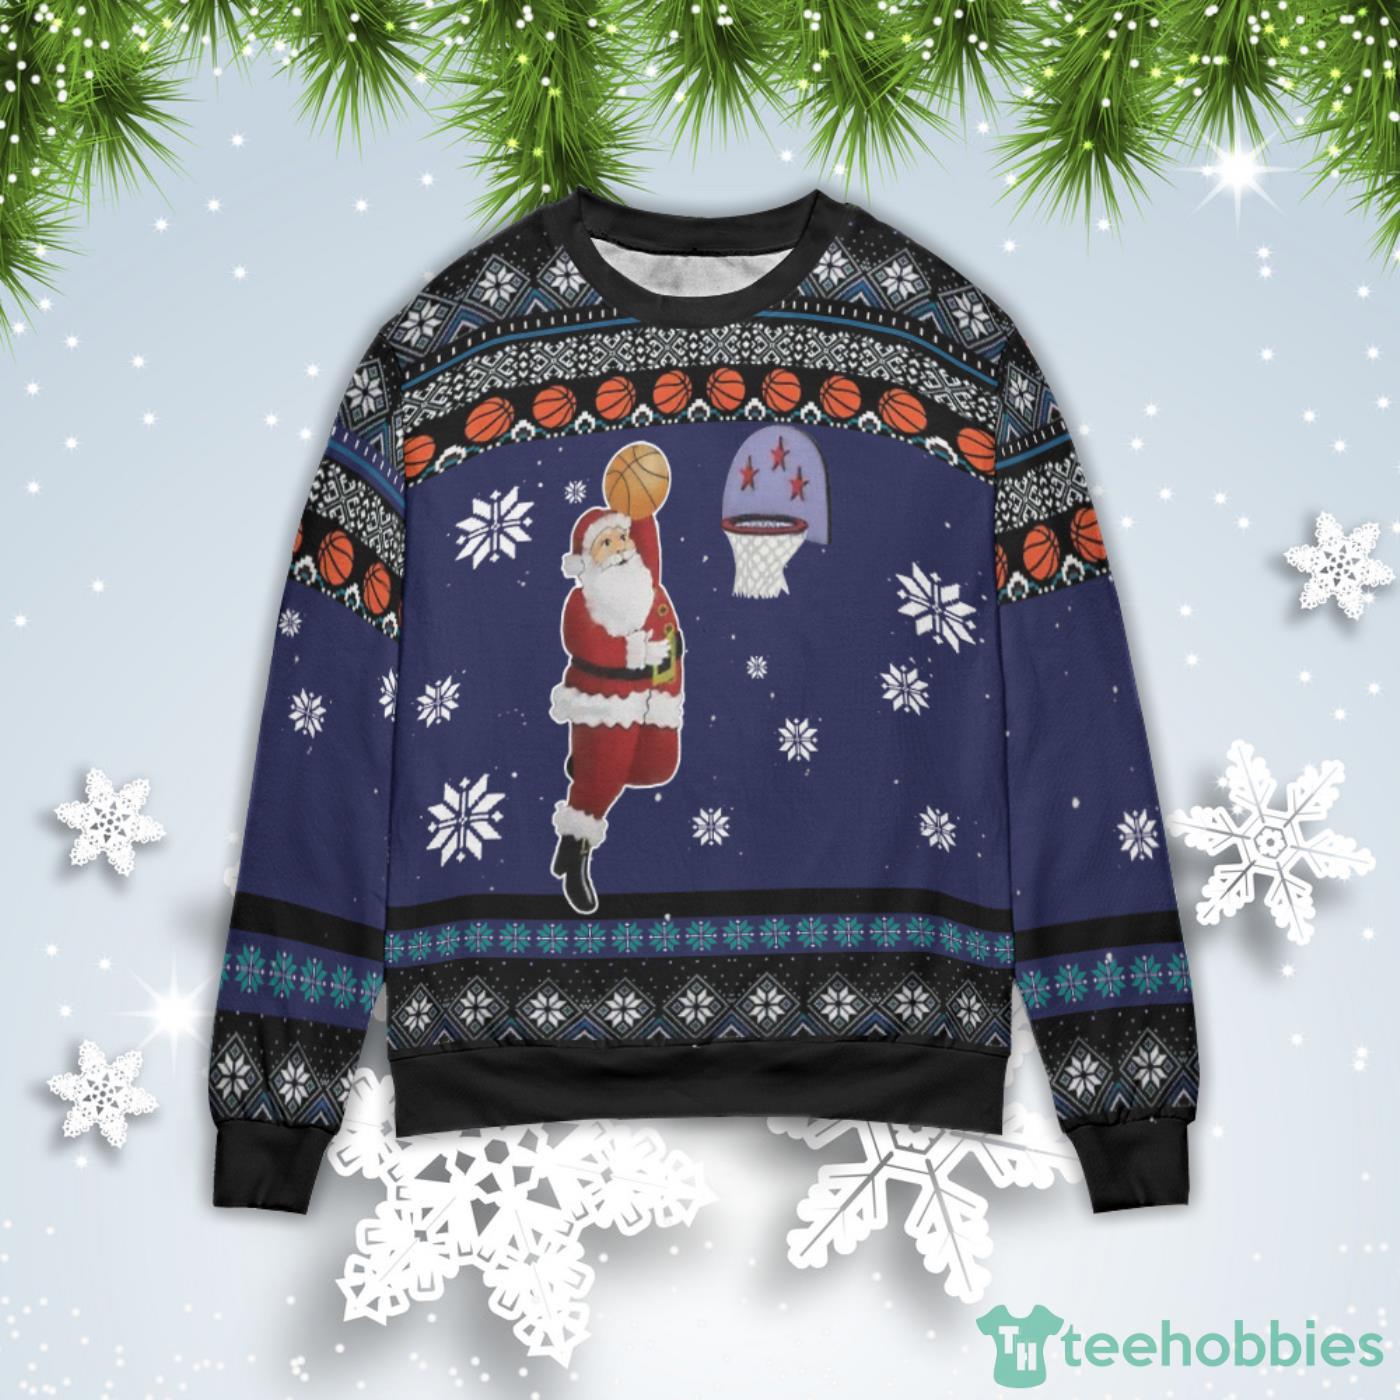 Santa Play Basketball Christmas Gift Ugly Christmas Sweater Product Photo 1